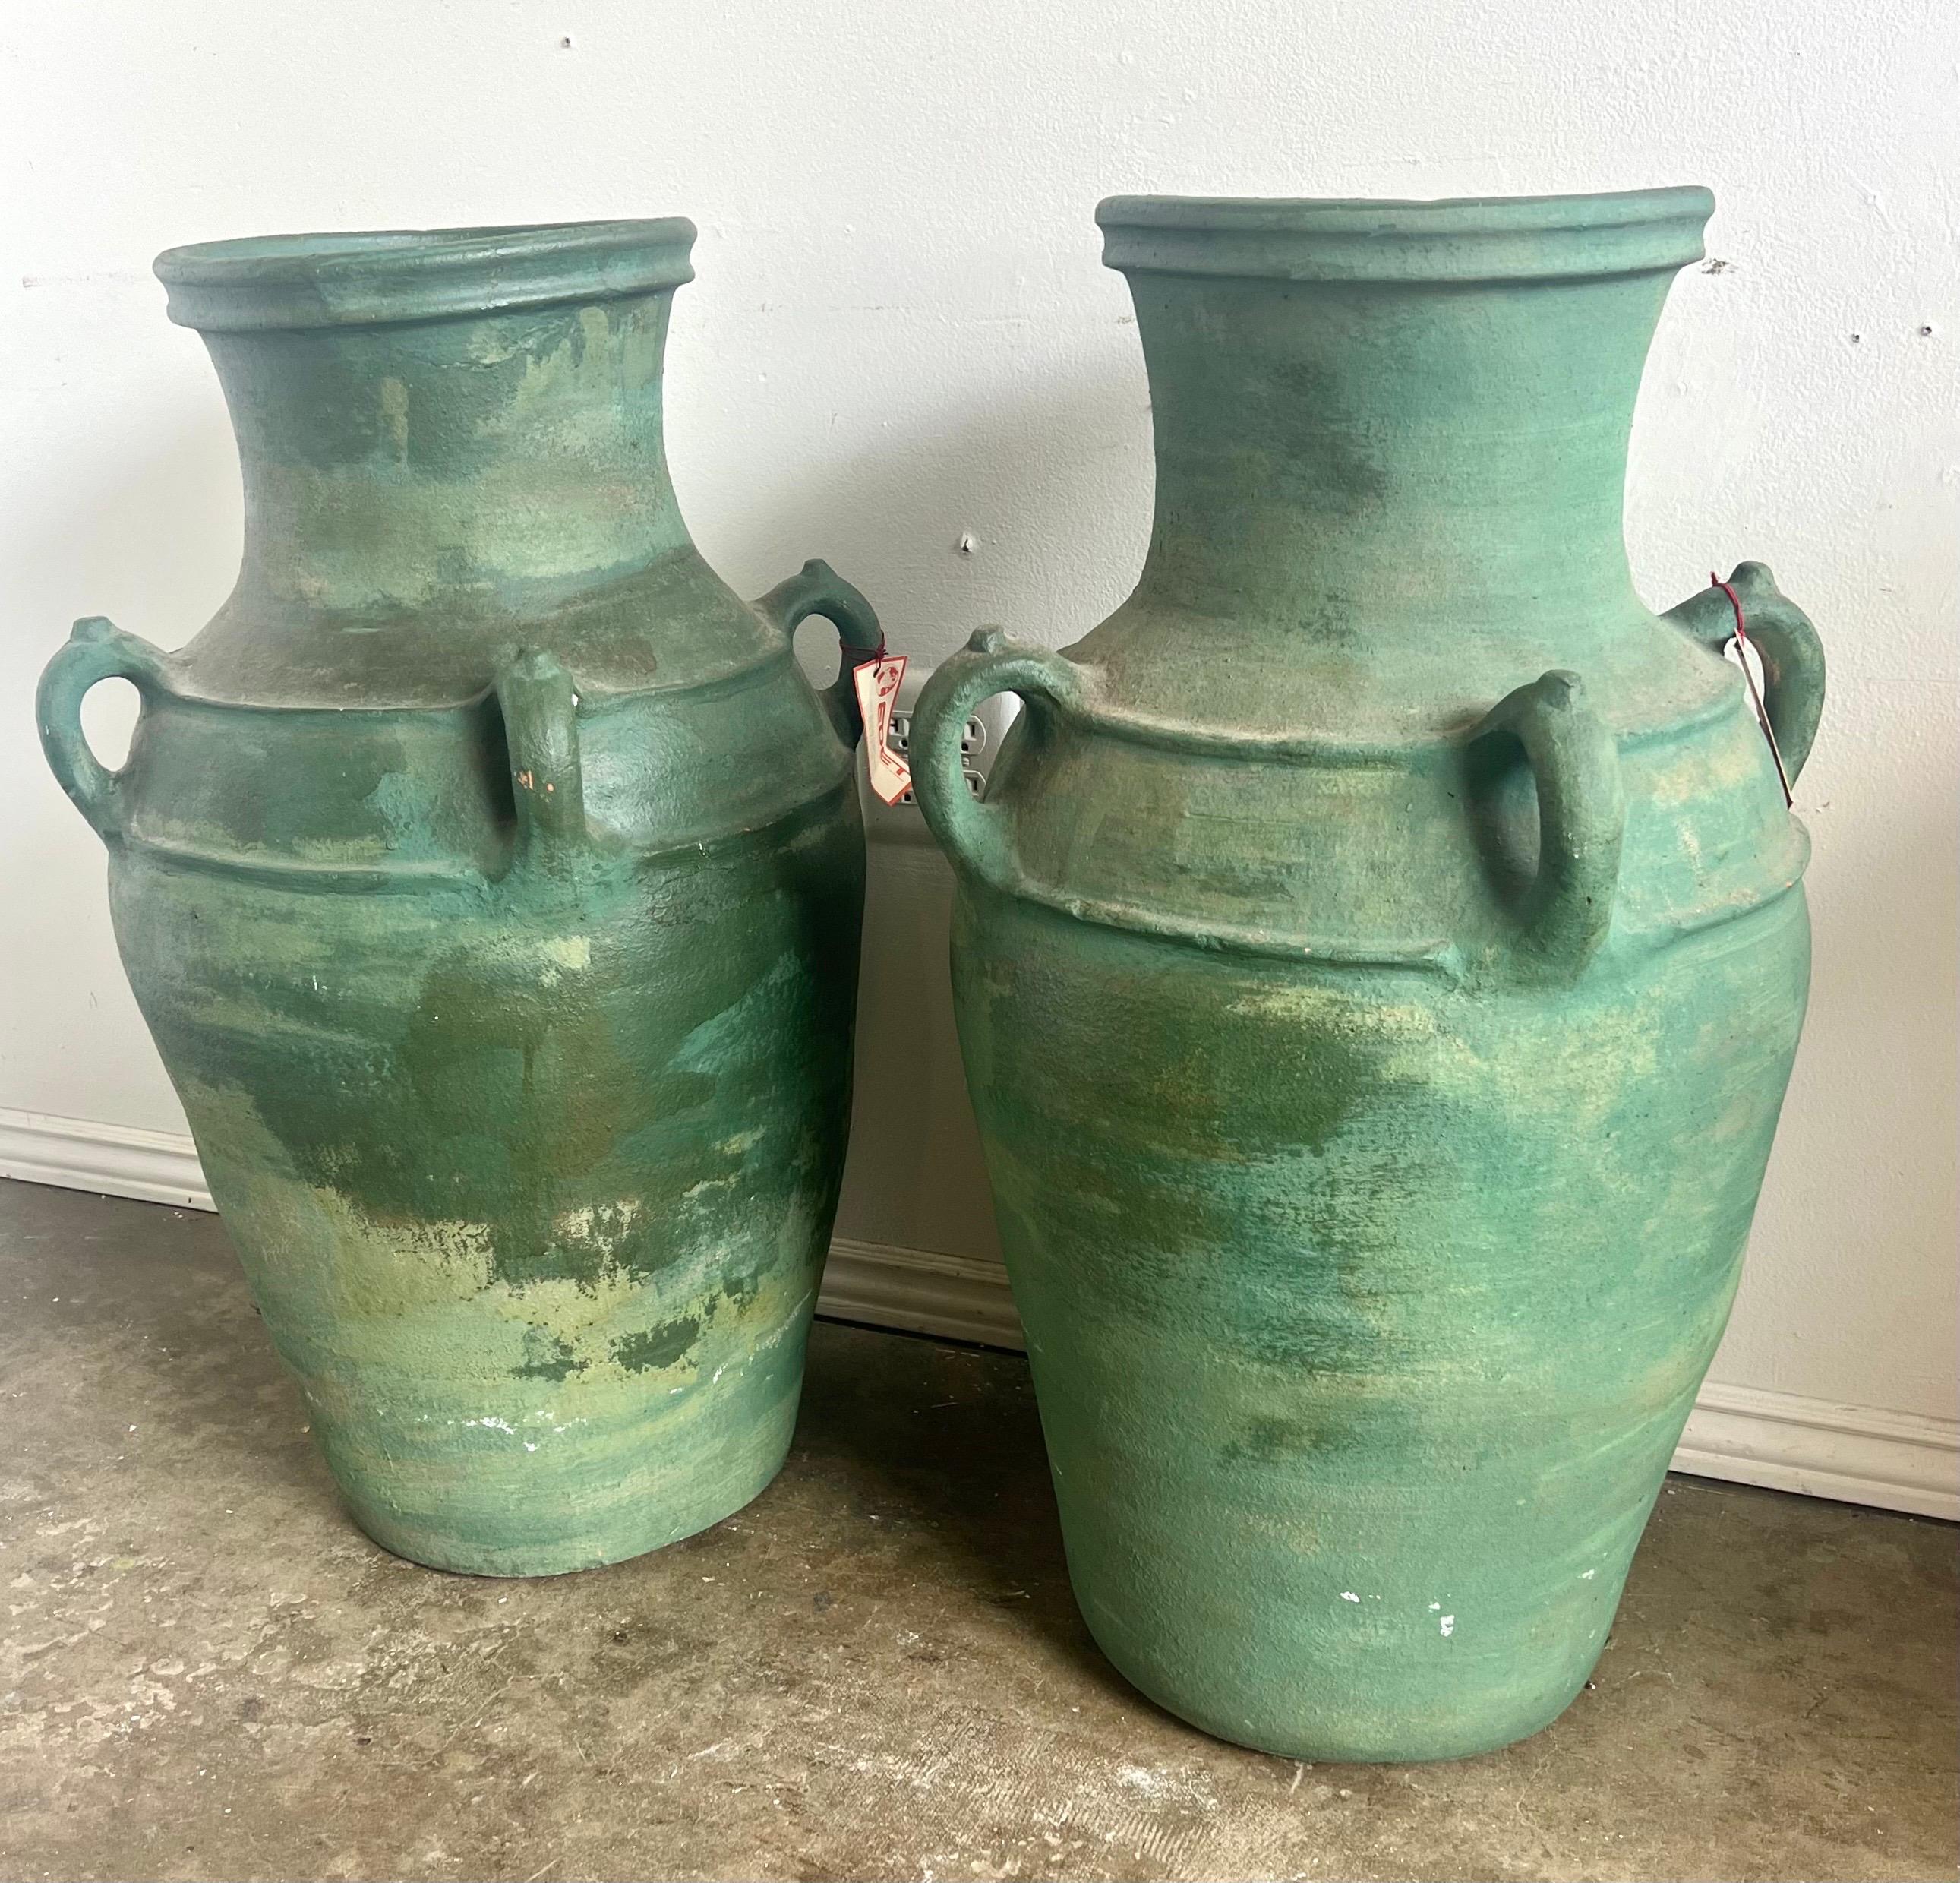 Paire de grandes urnes en céramique, chacune avec un corps robuste et arrondi et un col étroit et évasé.  Les urnes sont recouvertes d'une glaçure verte vieillie qui leur donne un aspect antique.  Les deux urnes sont équipées d'une double poignée